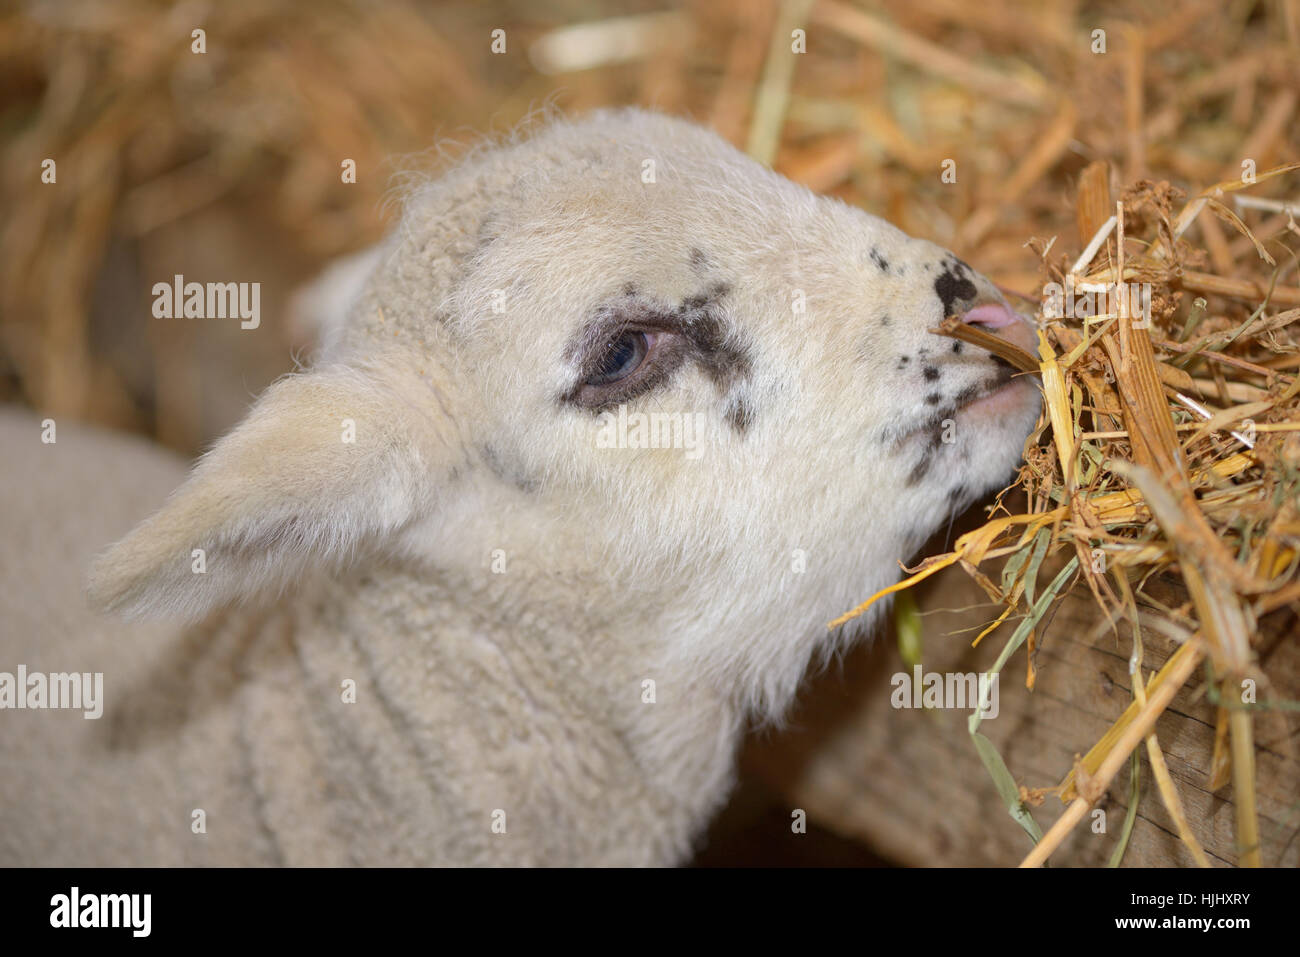 Mignon bébé agneau dans une étable Banque D'Images